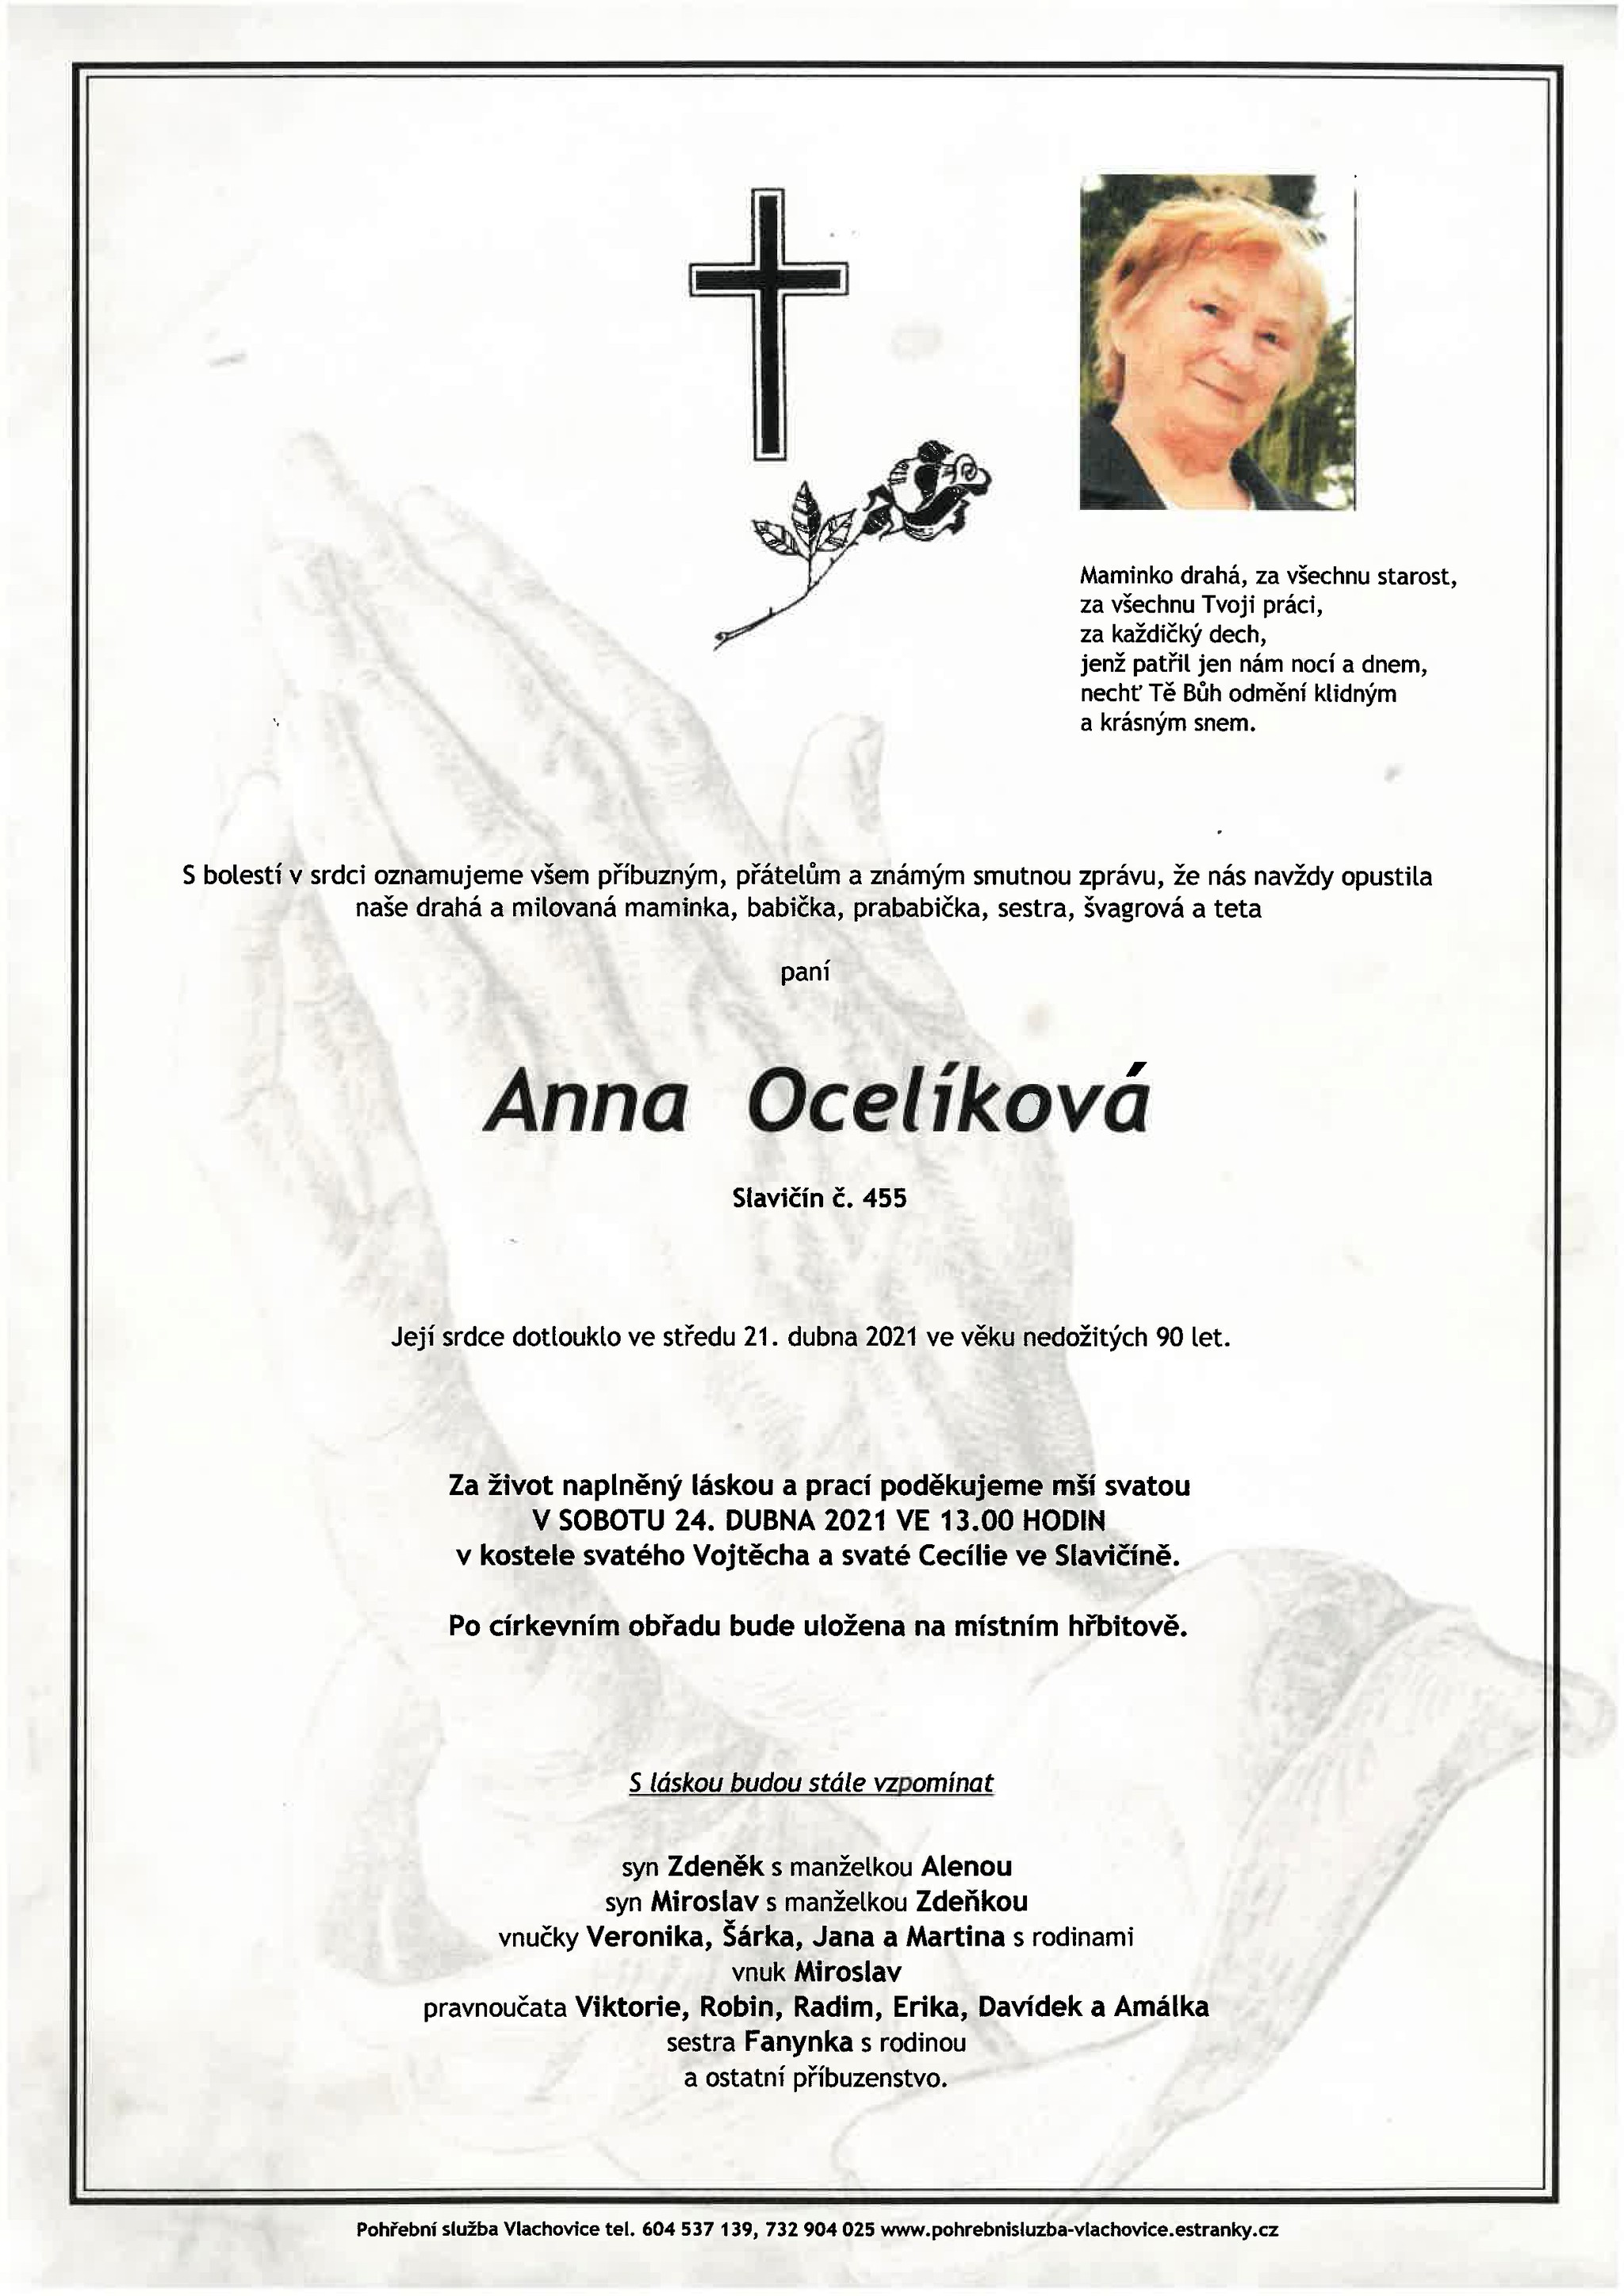 Anna Ocelíková